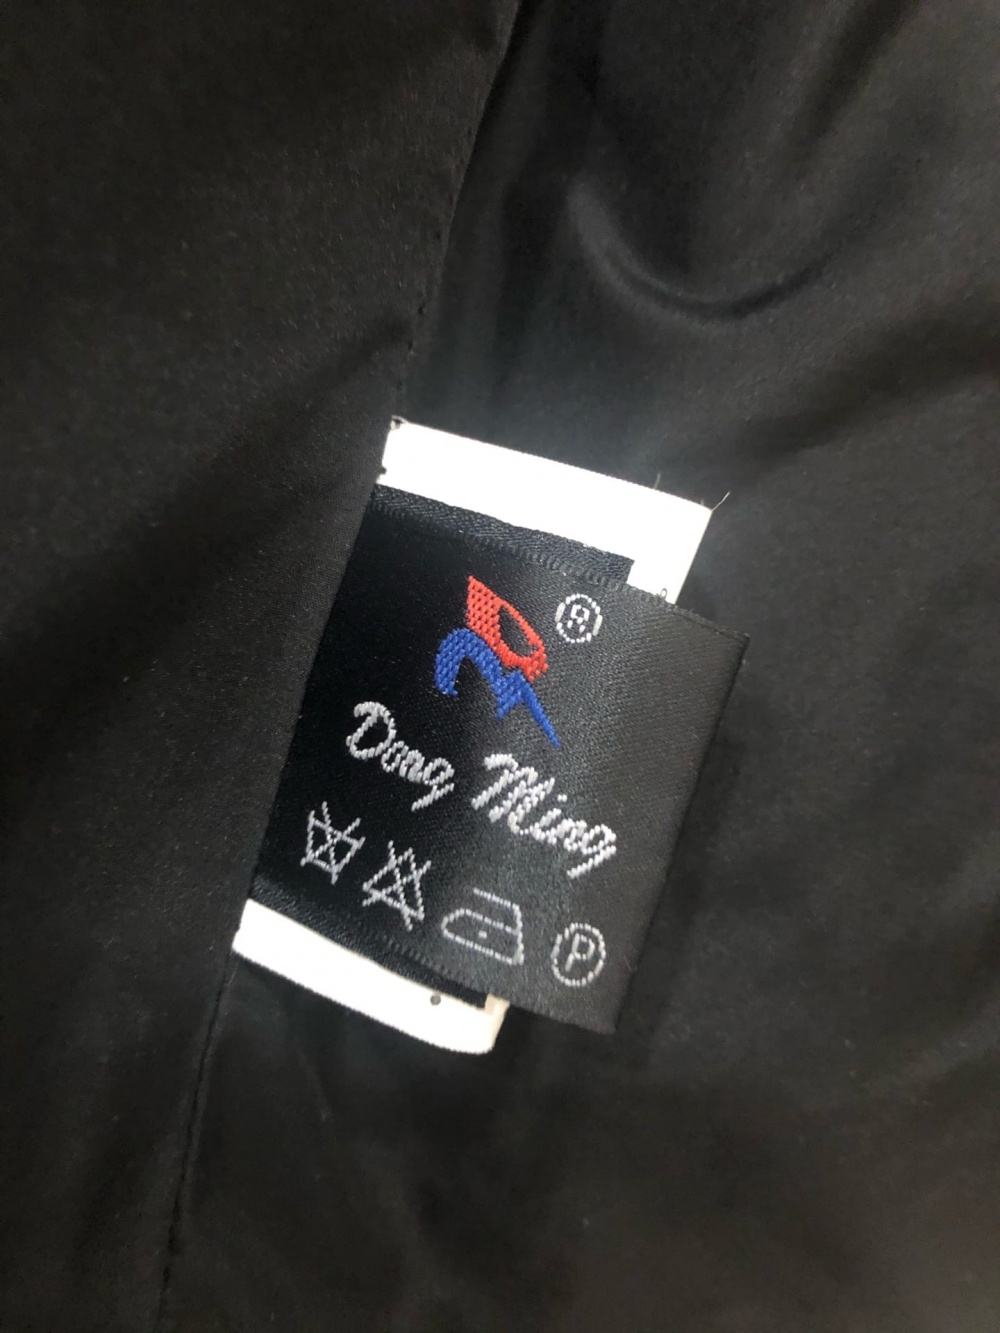 Кожаная куртка Dong Ming. Размер М-L.